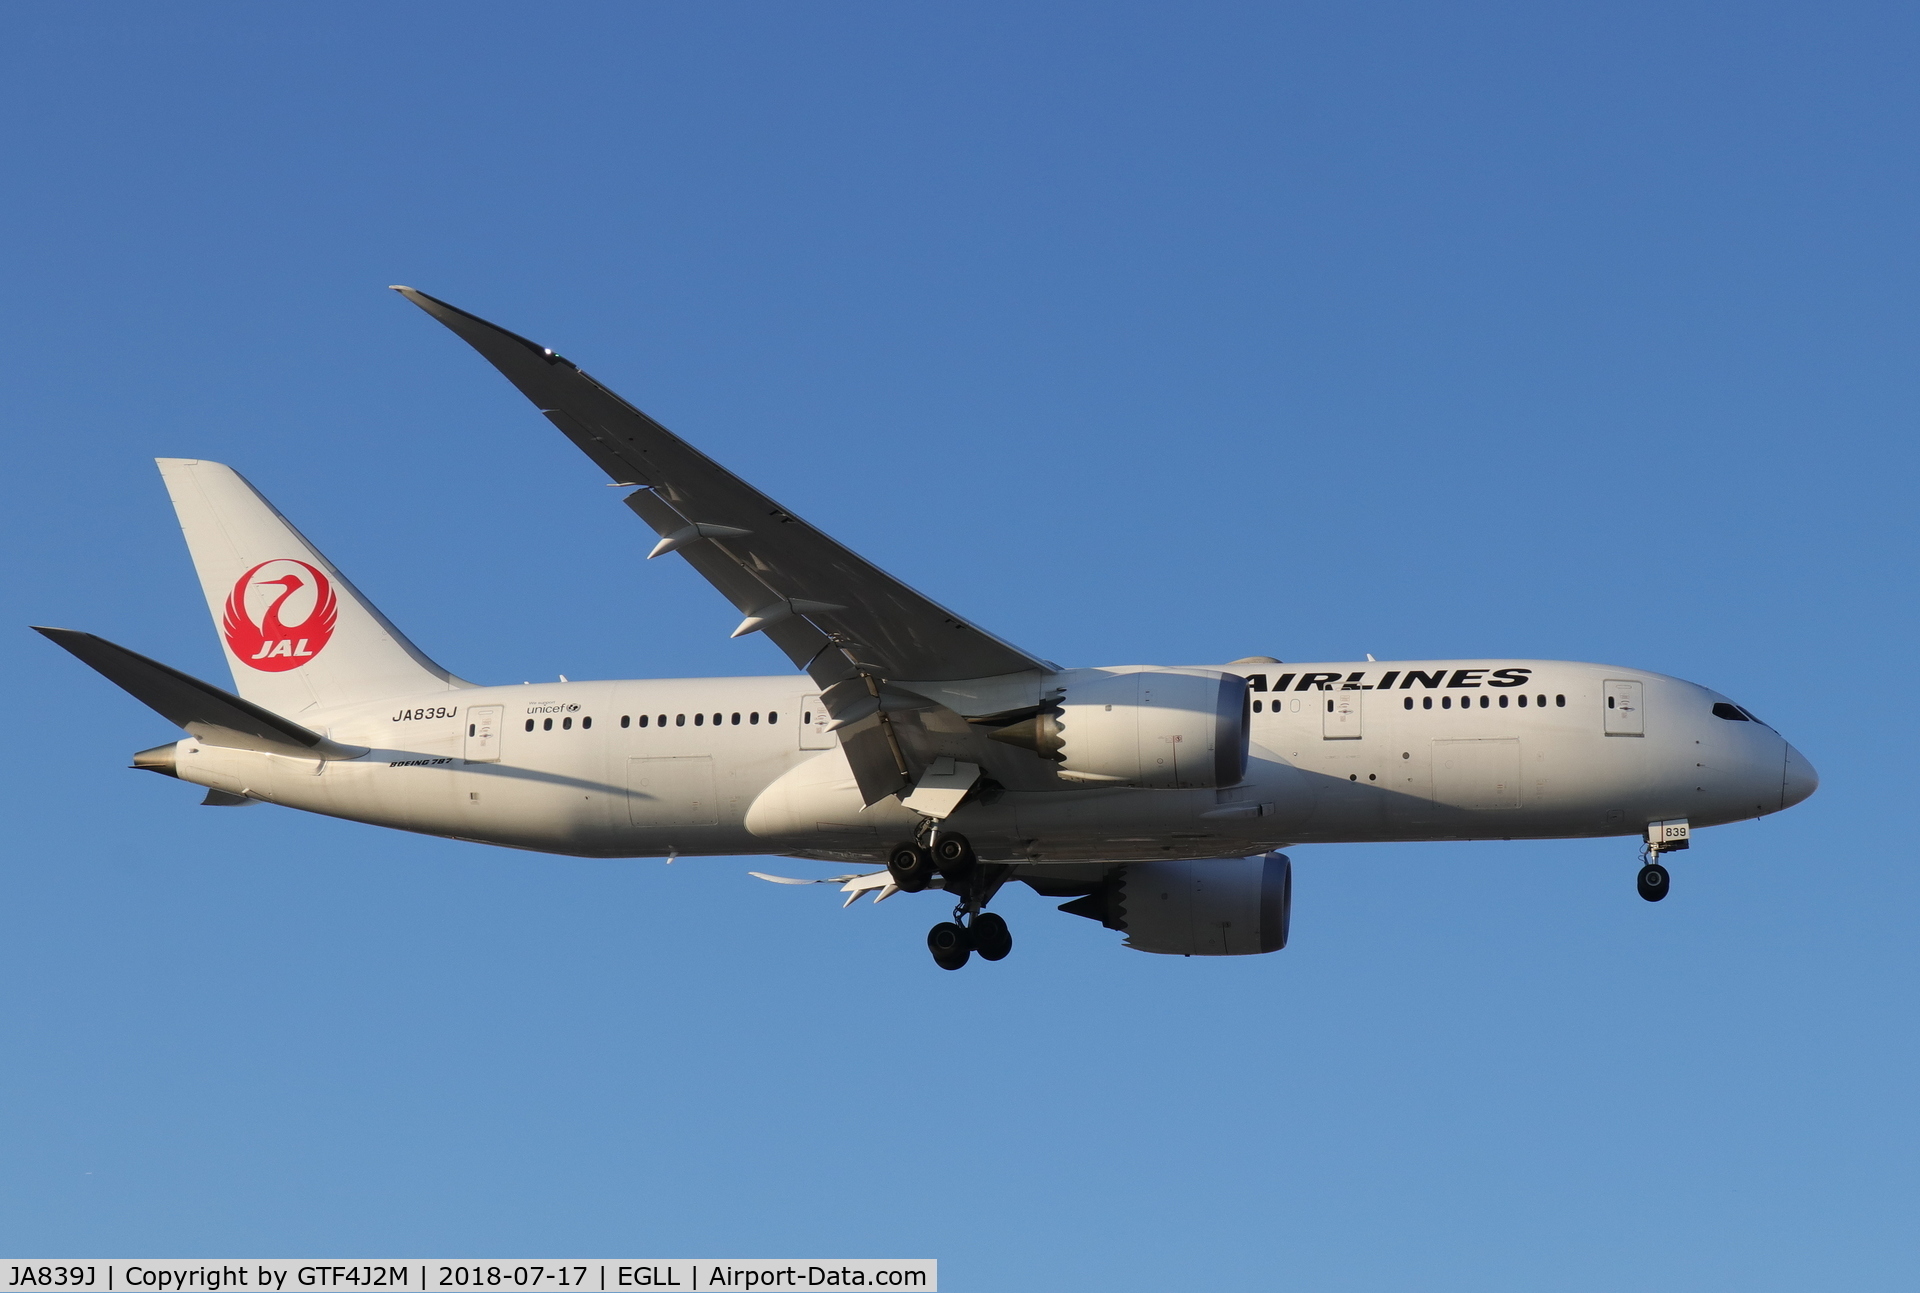 JA839J, 2014 Boeing 787-8 Dreamliner C/N 34853, JA839J at Heathrow 17.7.18